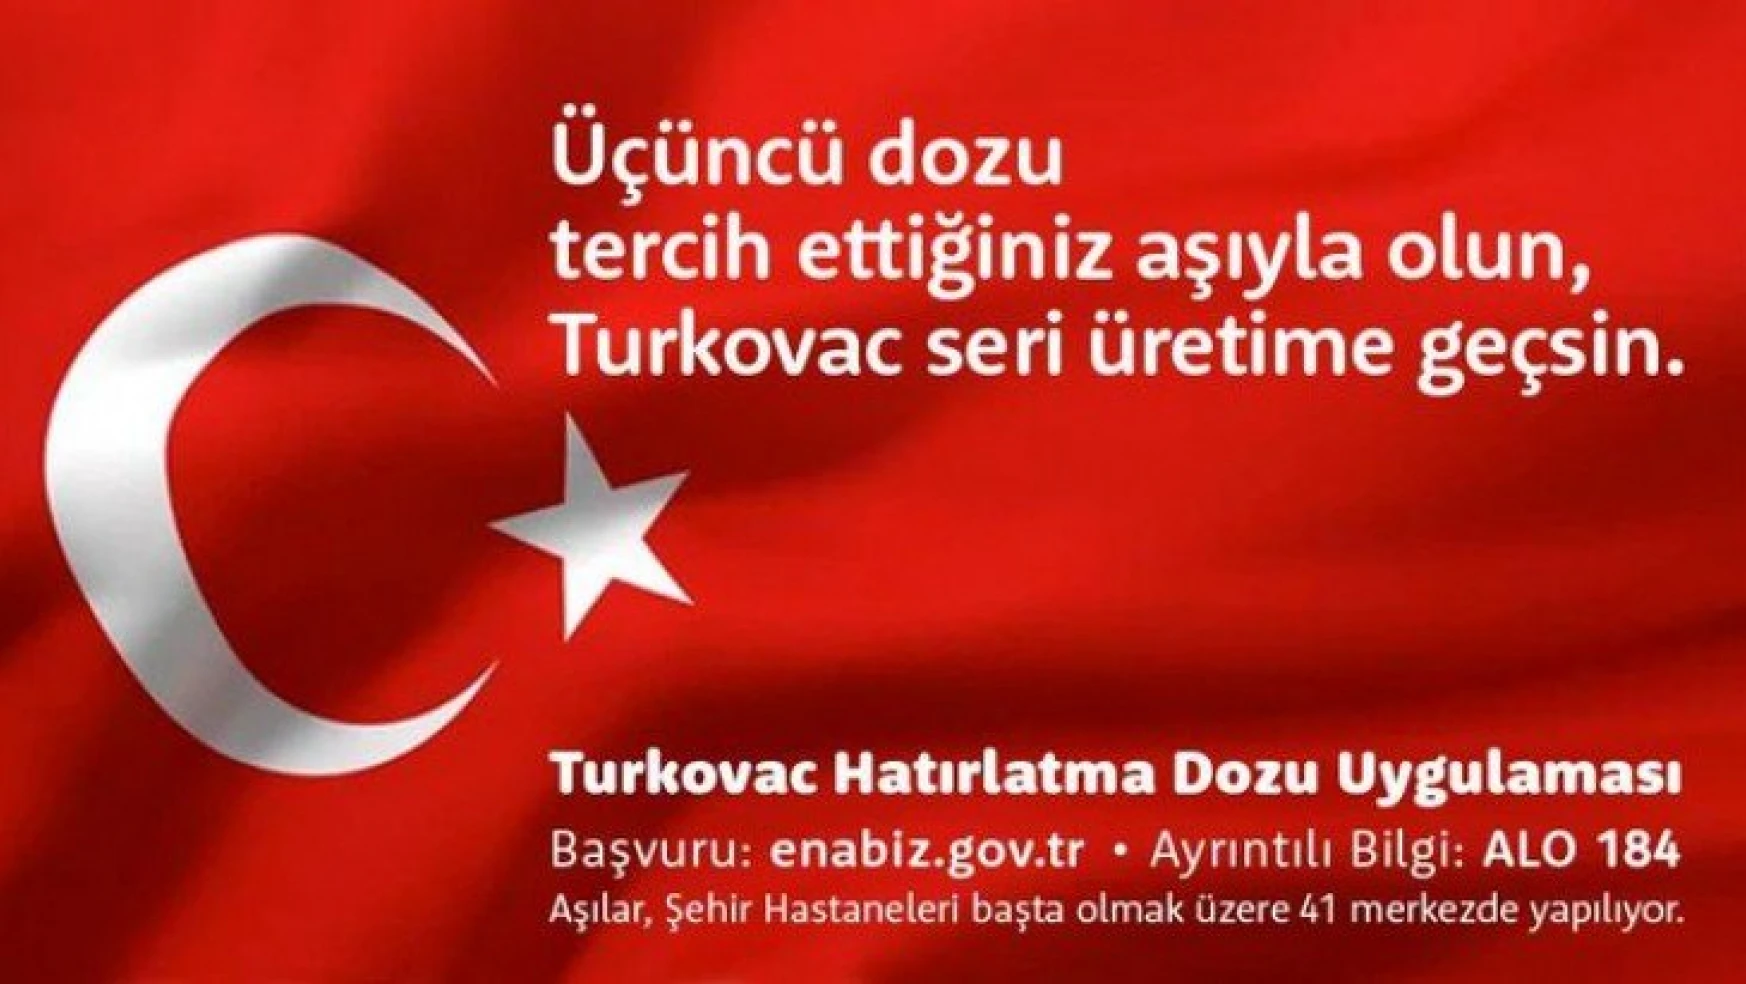 Turkovac'ı Türkiye'nin hizmetine sunmaya hazırlanıyoruz.